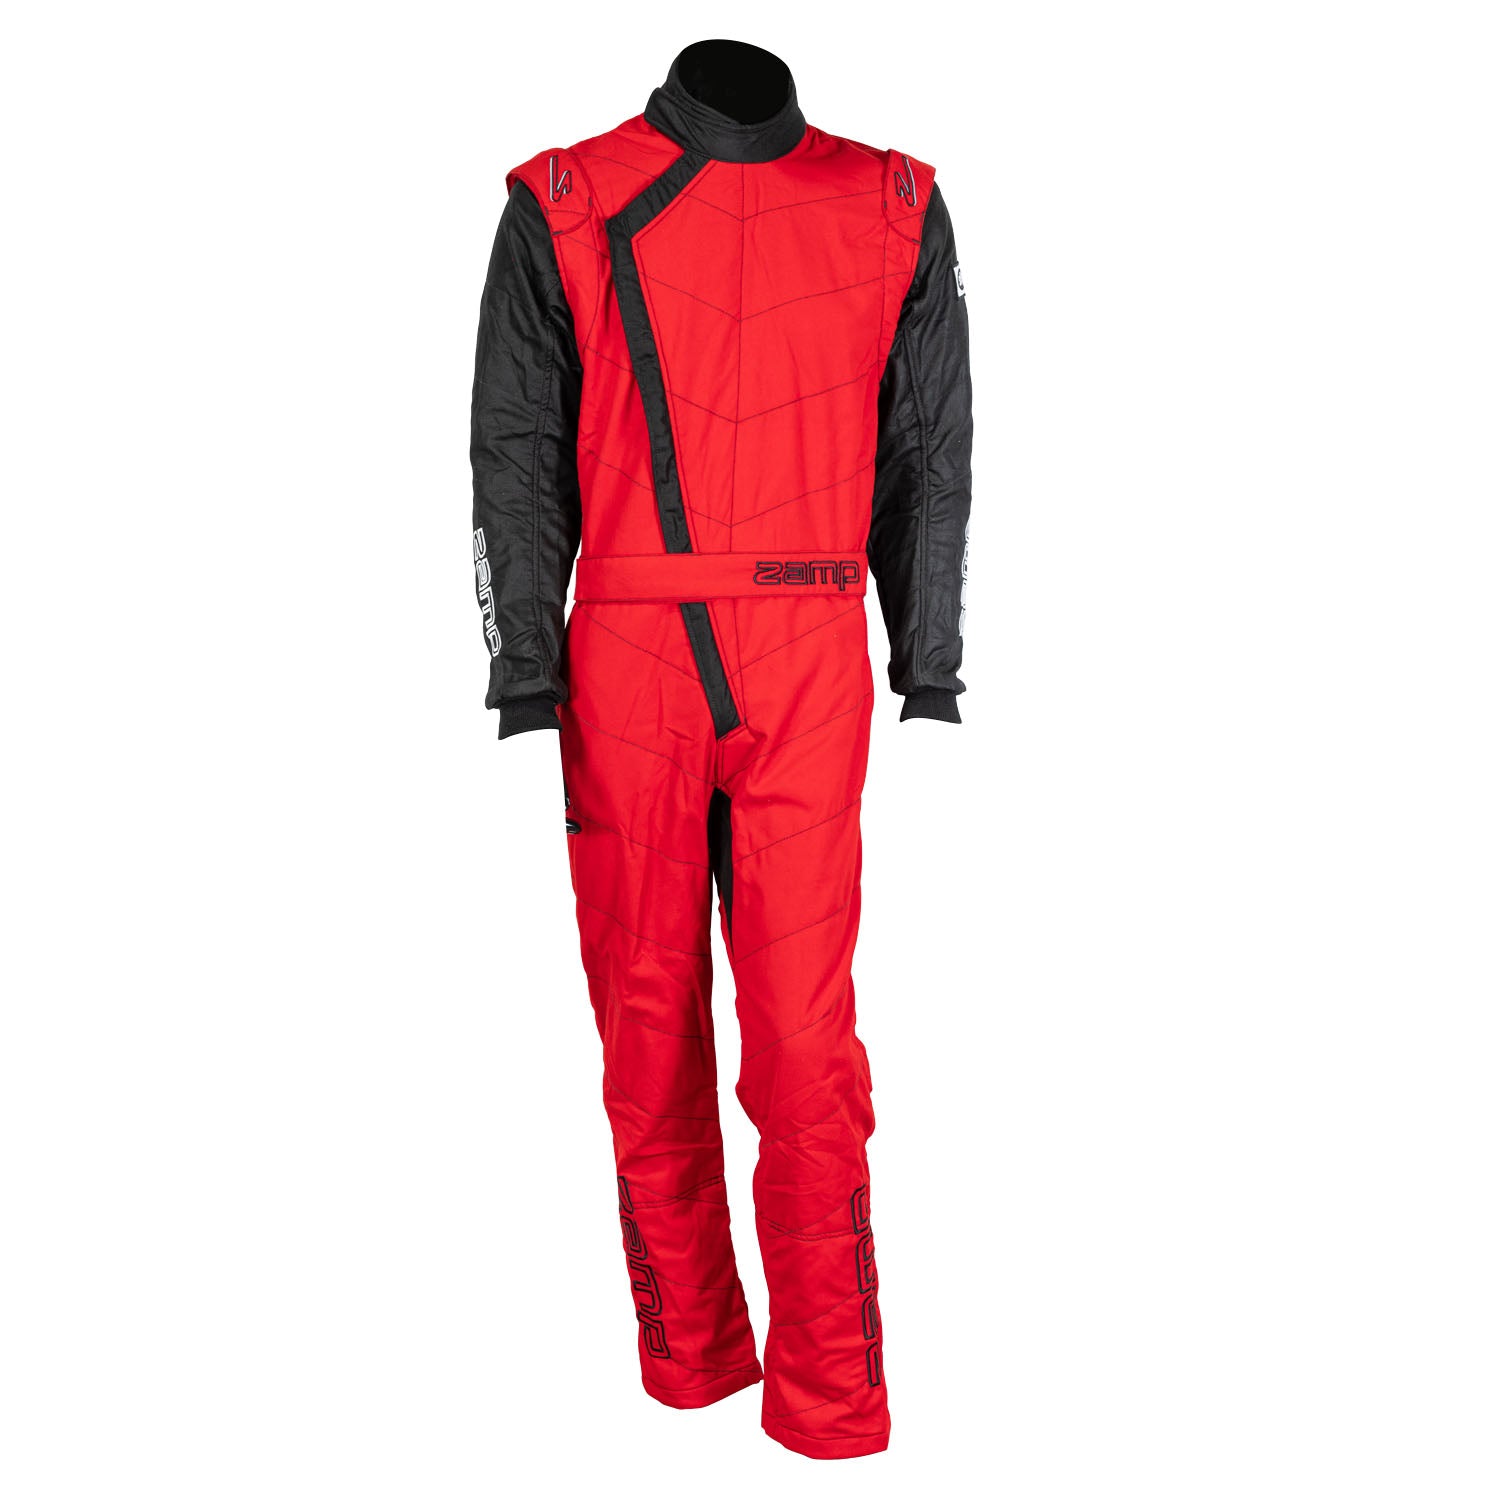 ZAMP Racing ZR-40 Race Suit Red R07C02XL